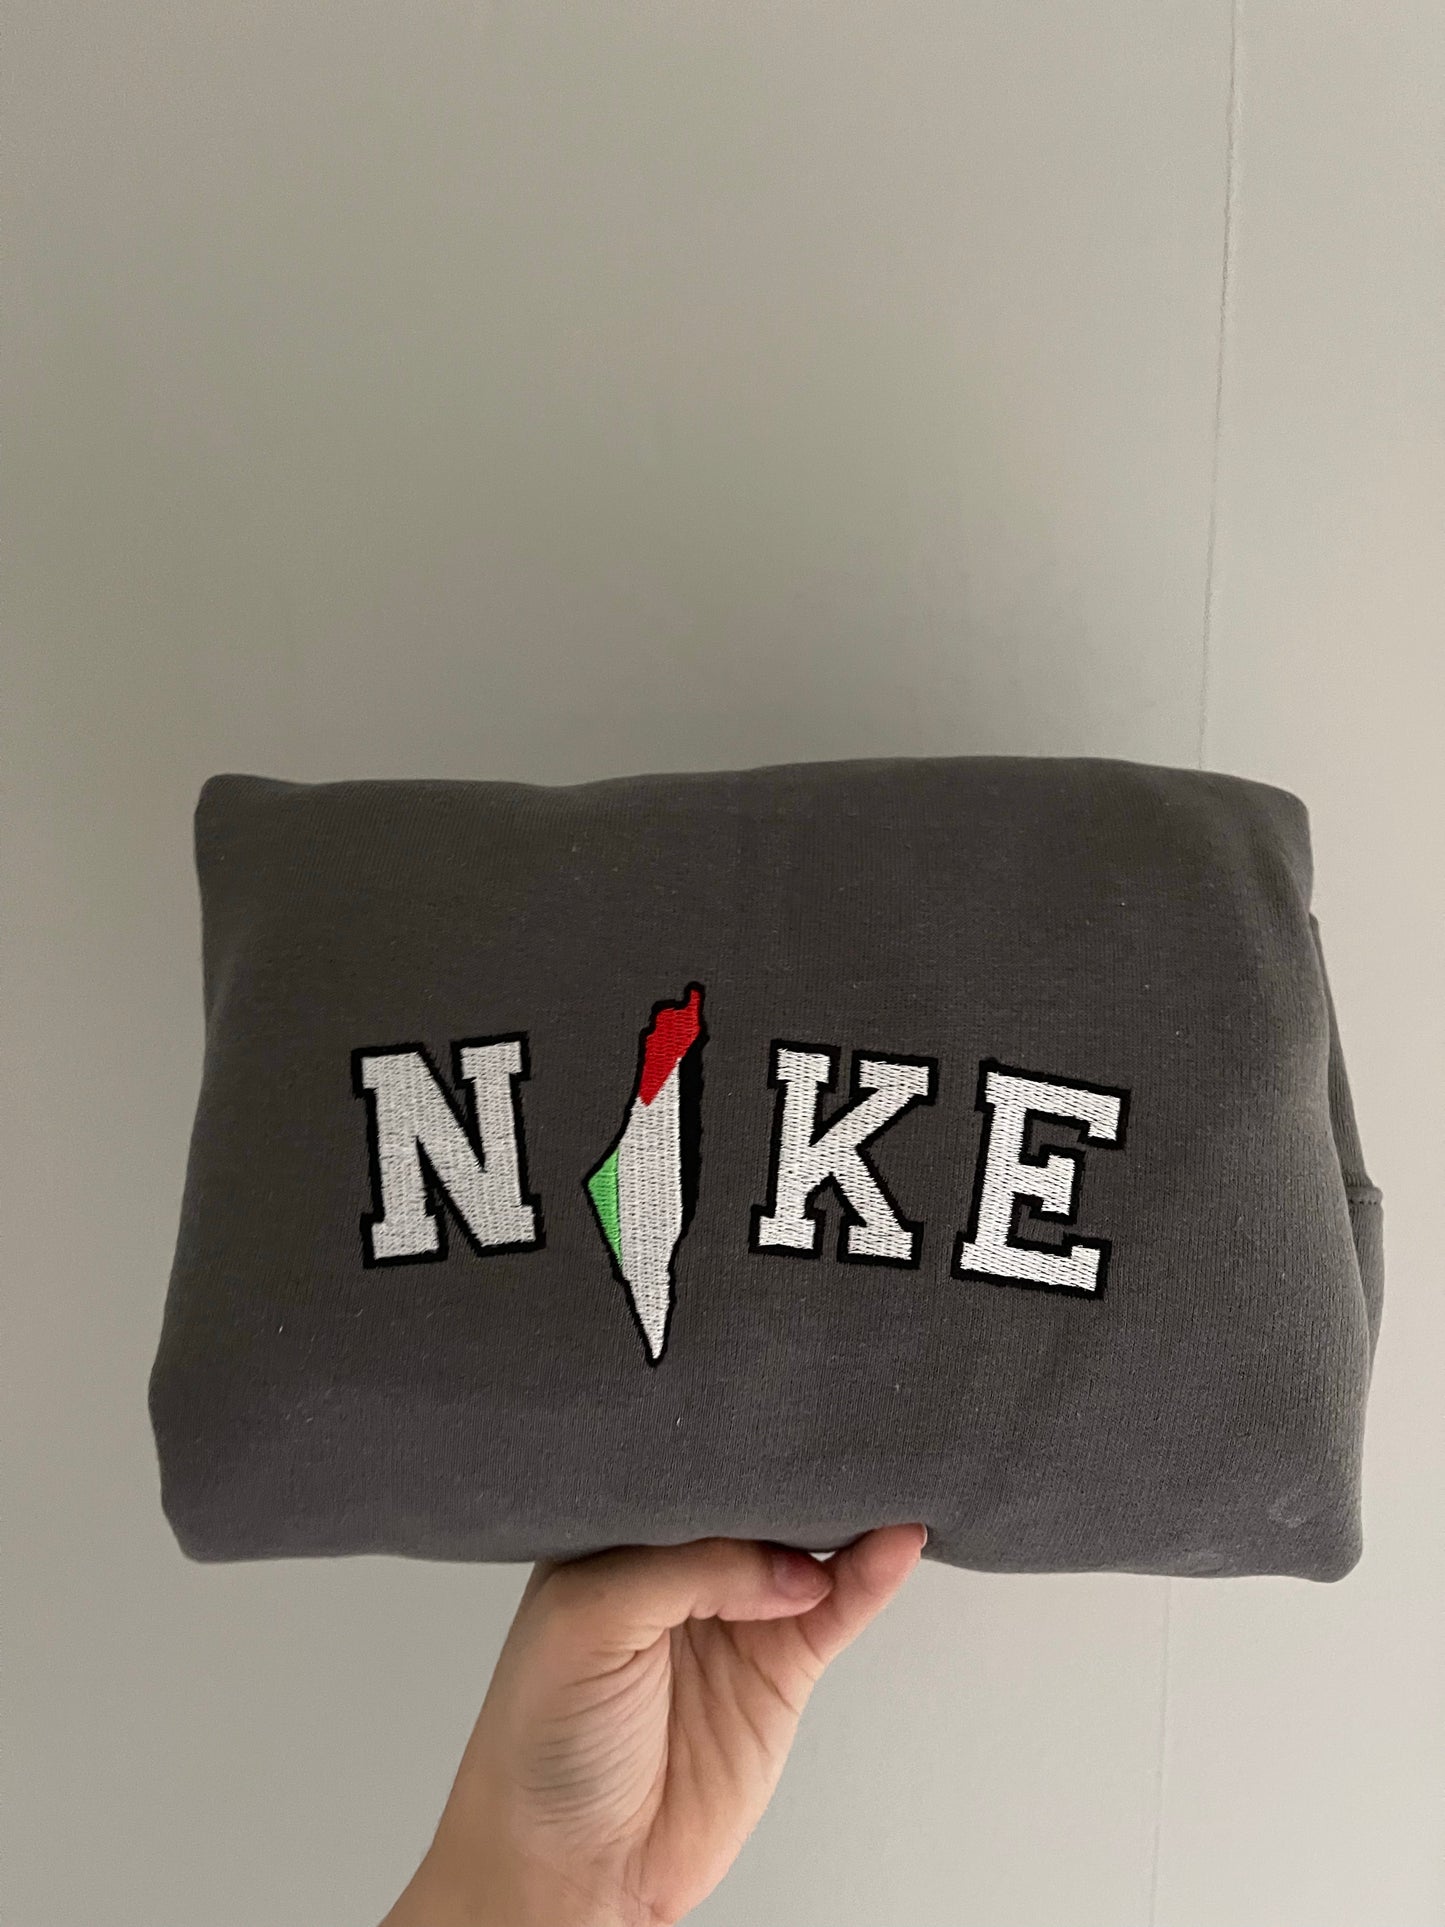 Palestine x Niike embroidered sweatshirt